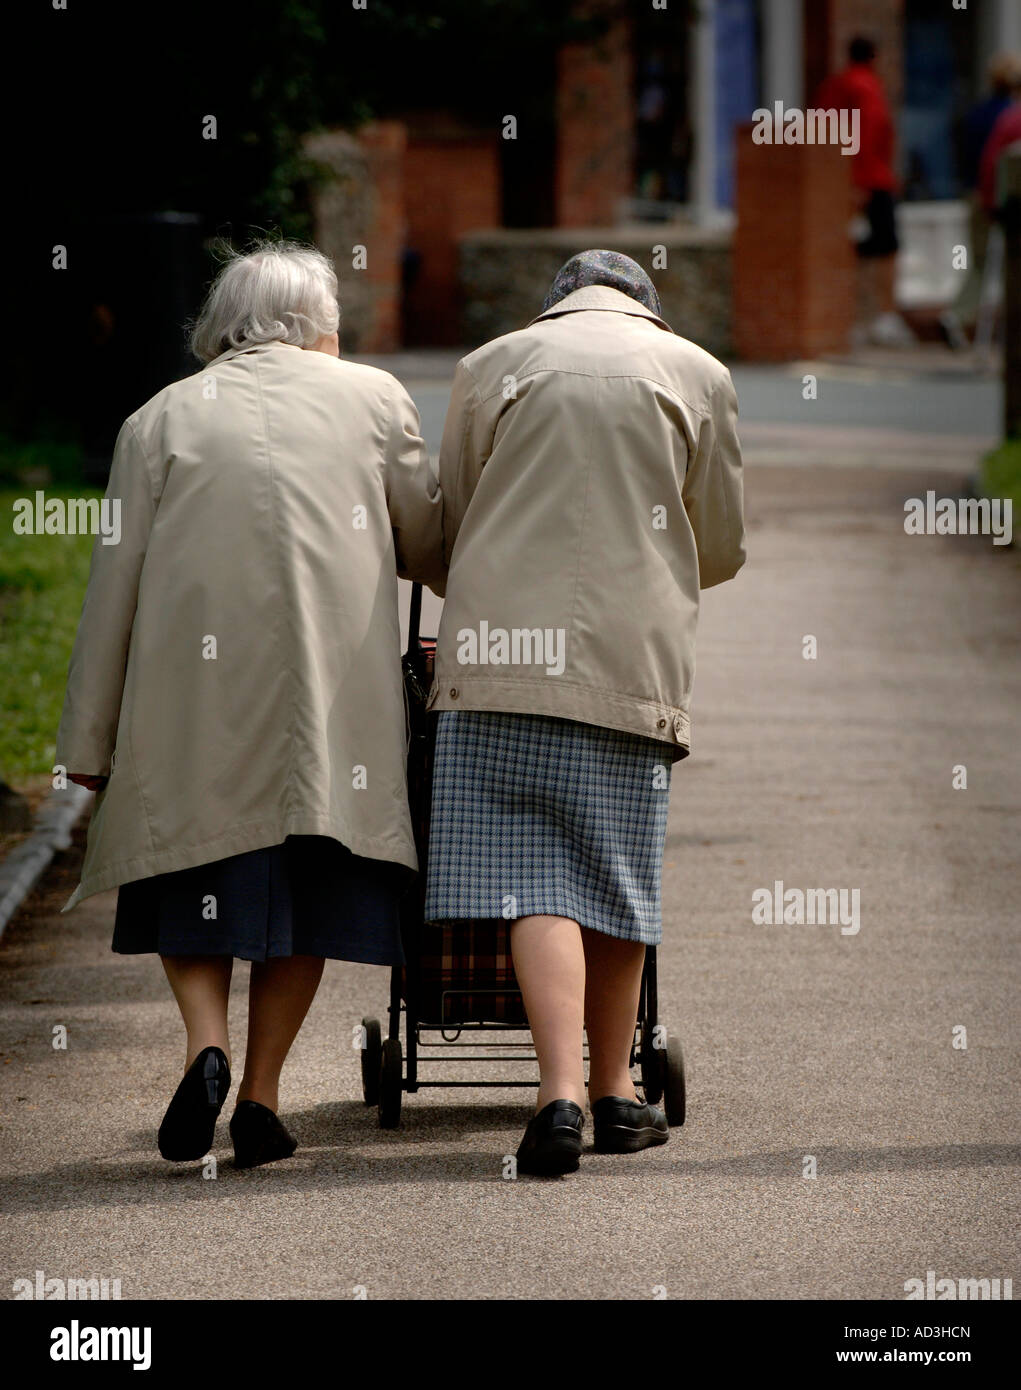 Sozialfürsorge: Zwei Rentner gehen einen Fußweg entlang Seite an Seite. Bild von Jim Holden. Stockfoto